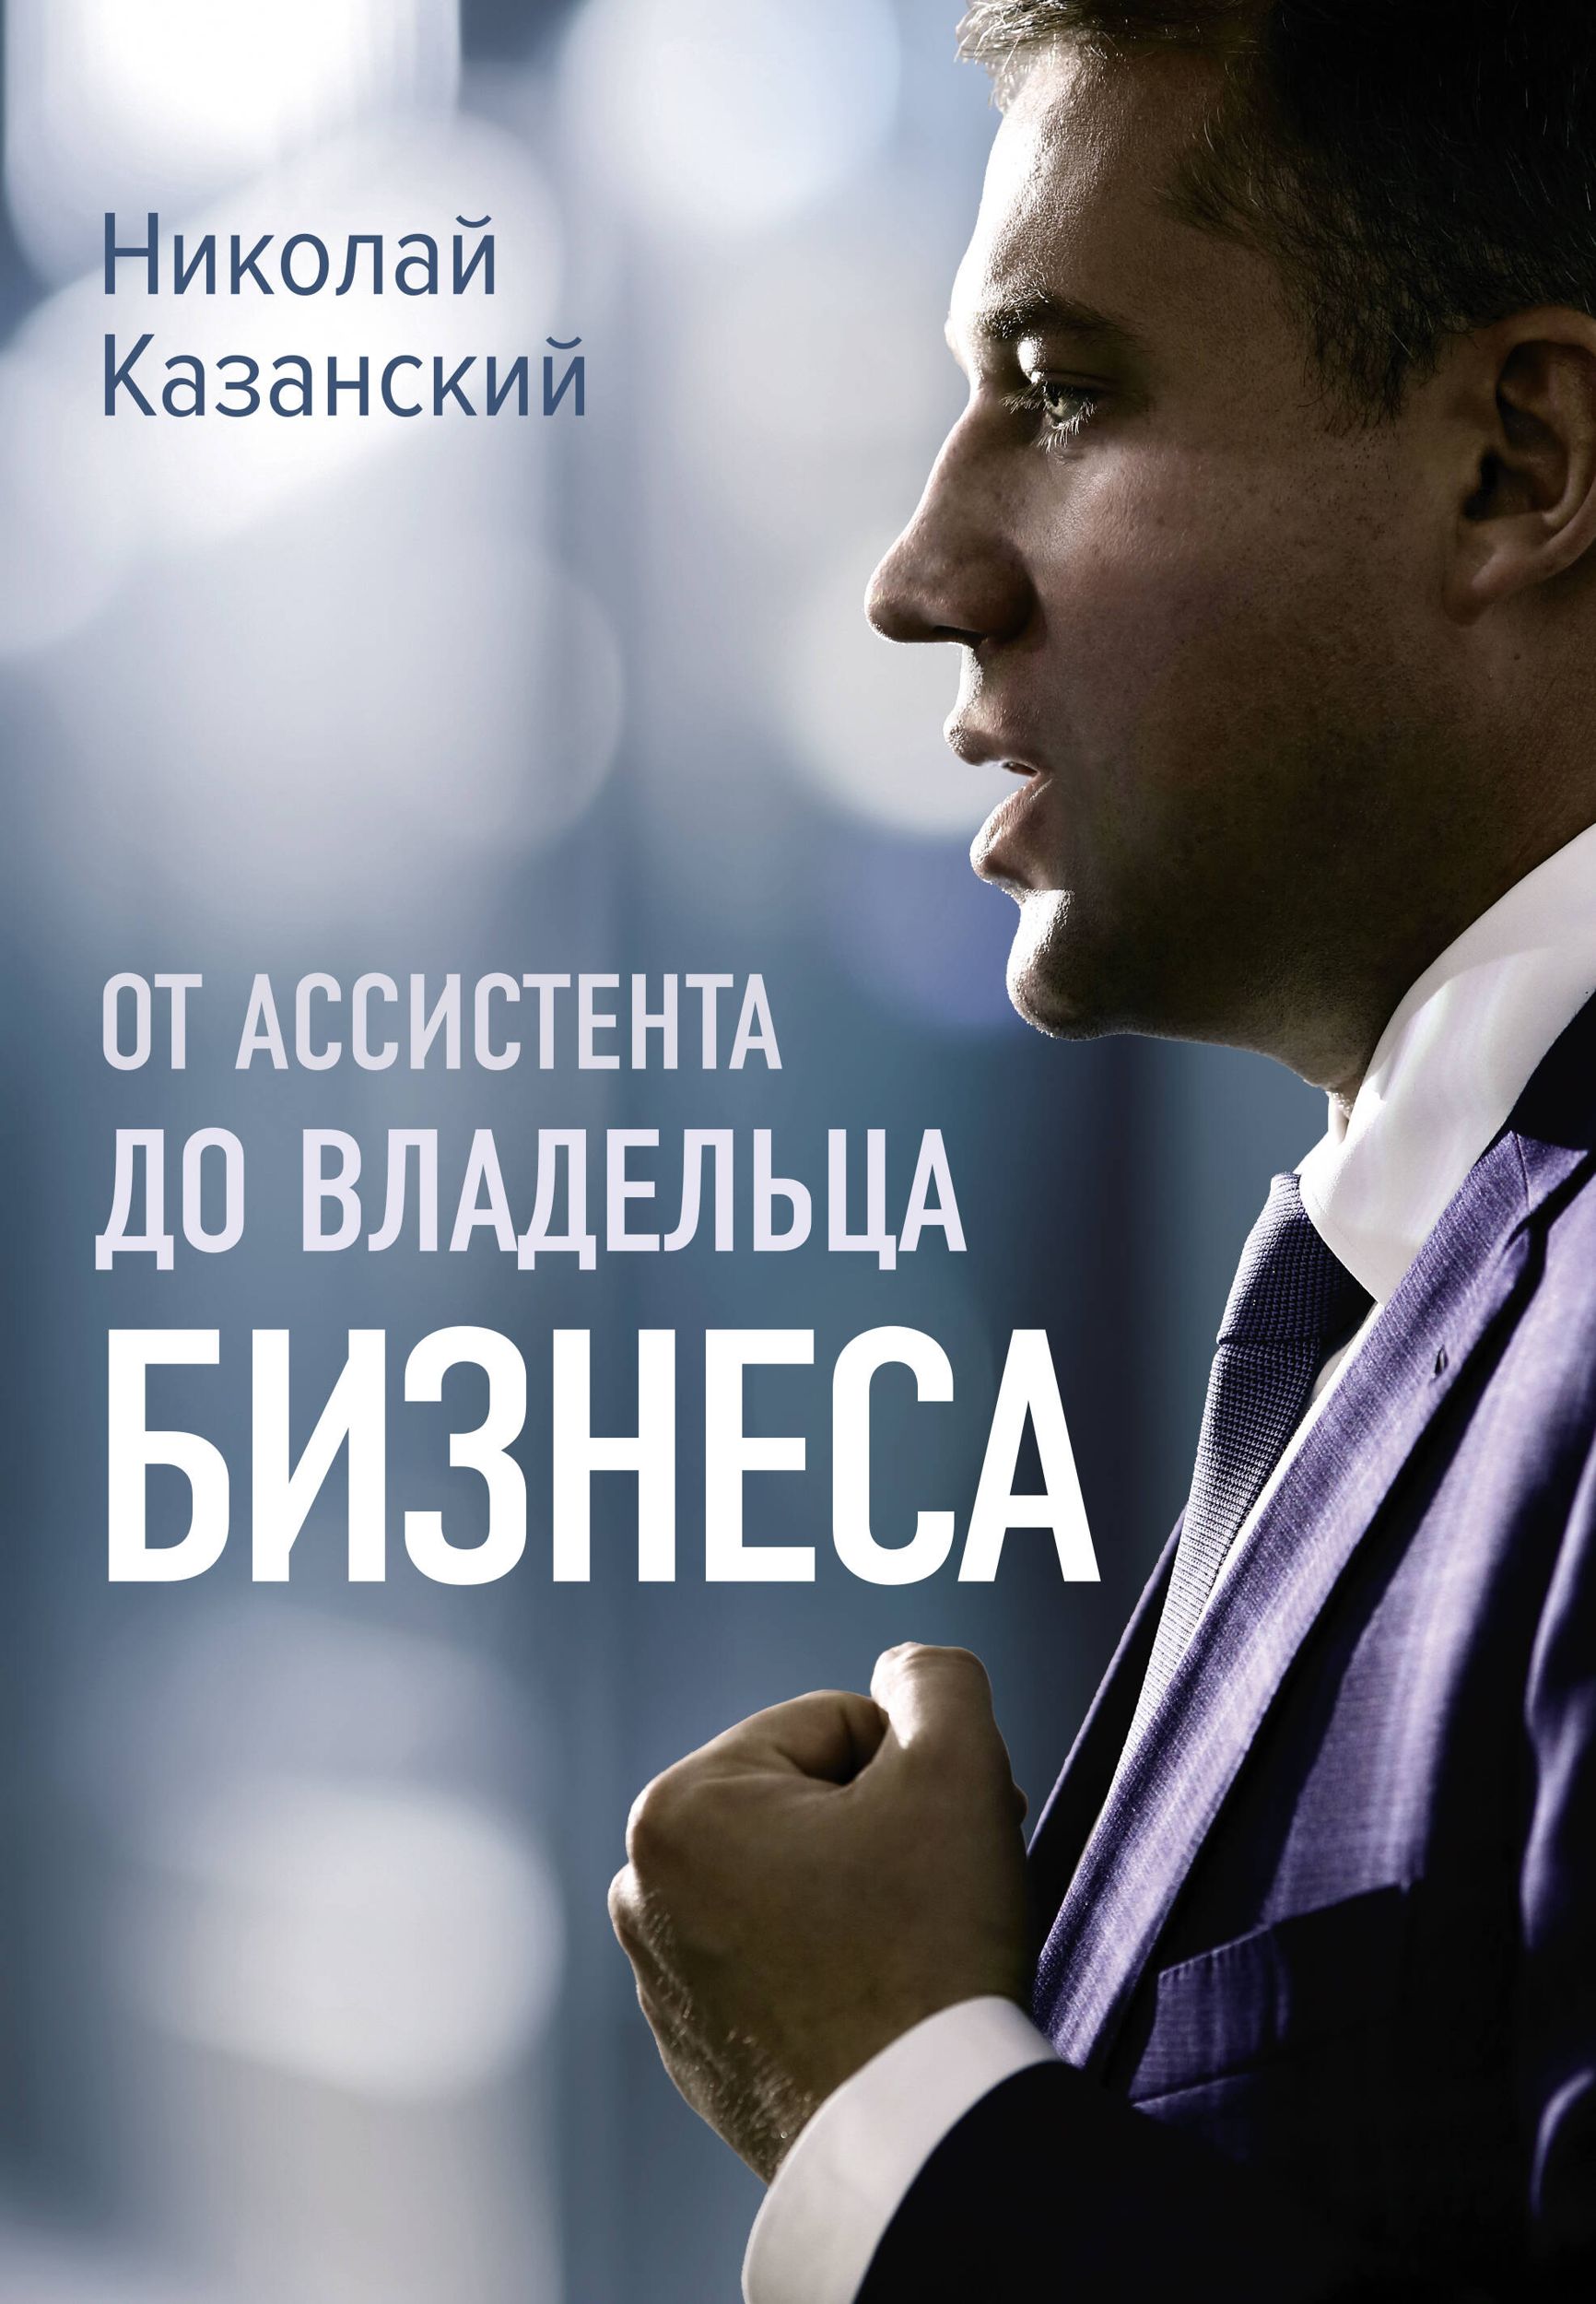 Обложка книги Николая Казанского «От ассистента до владельца бизнеса»